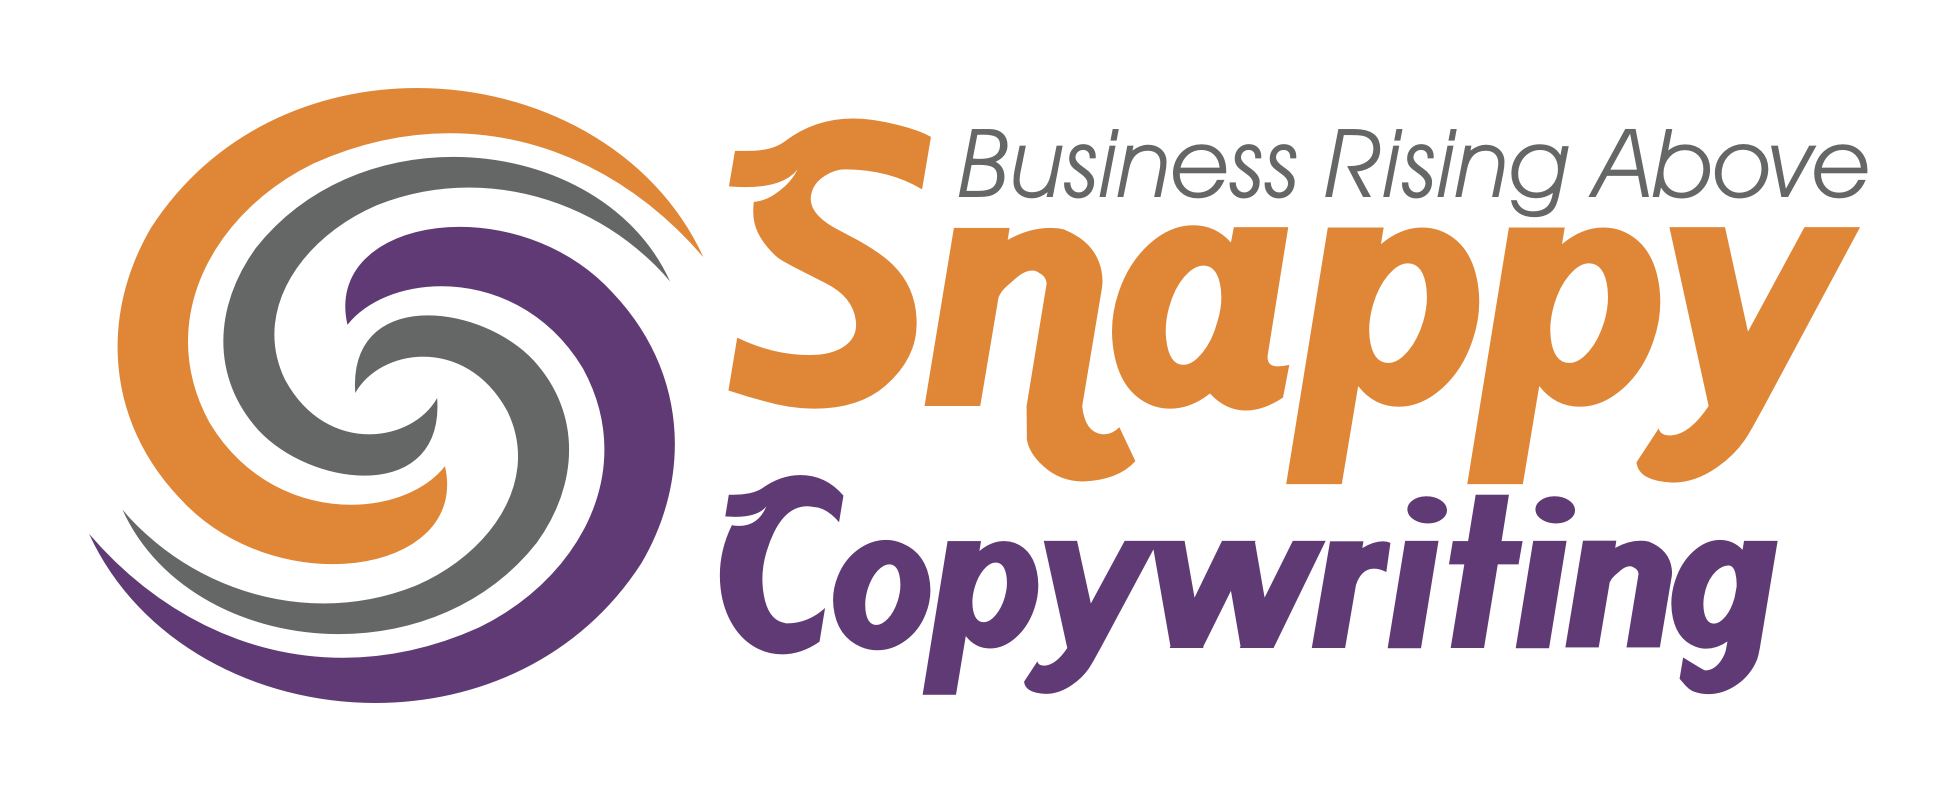 snappy logo code